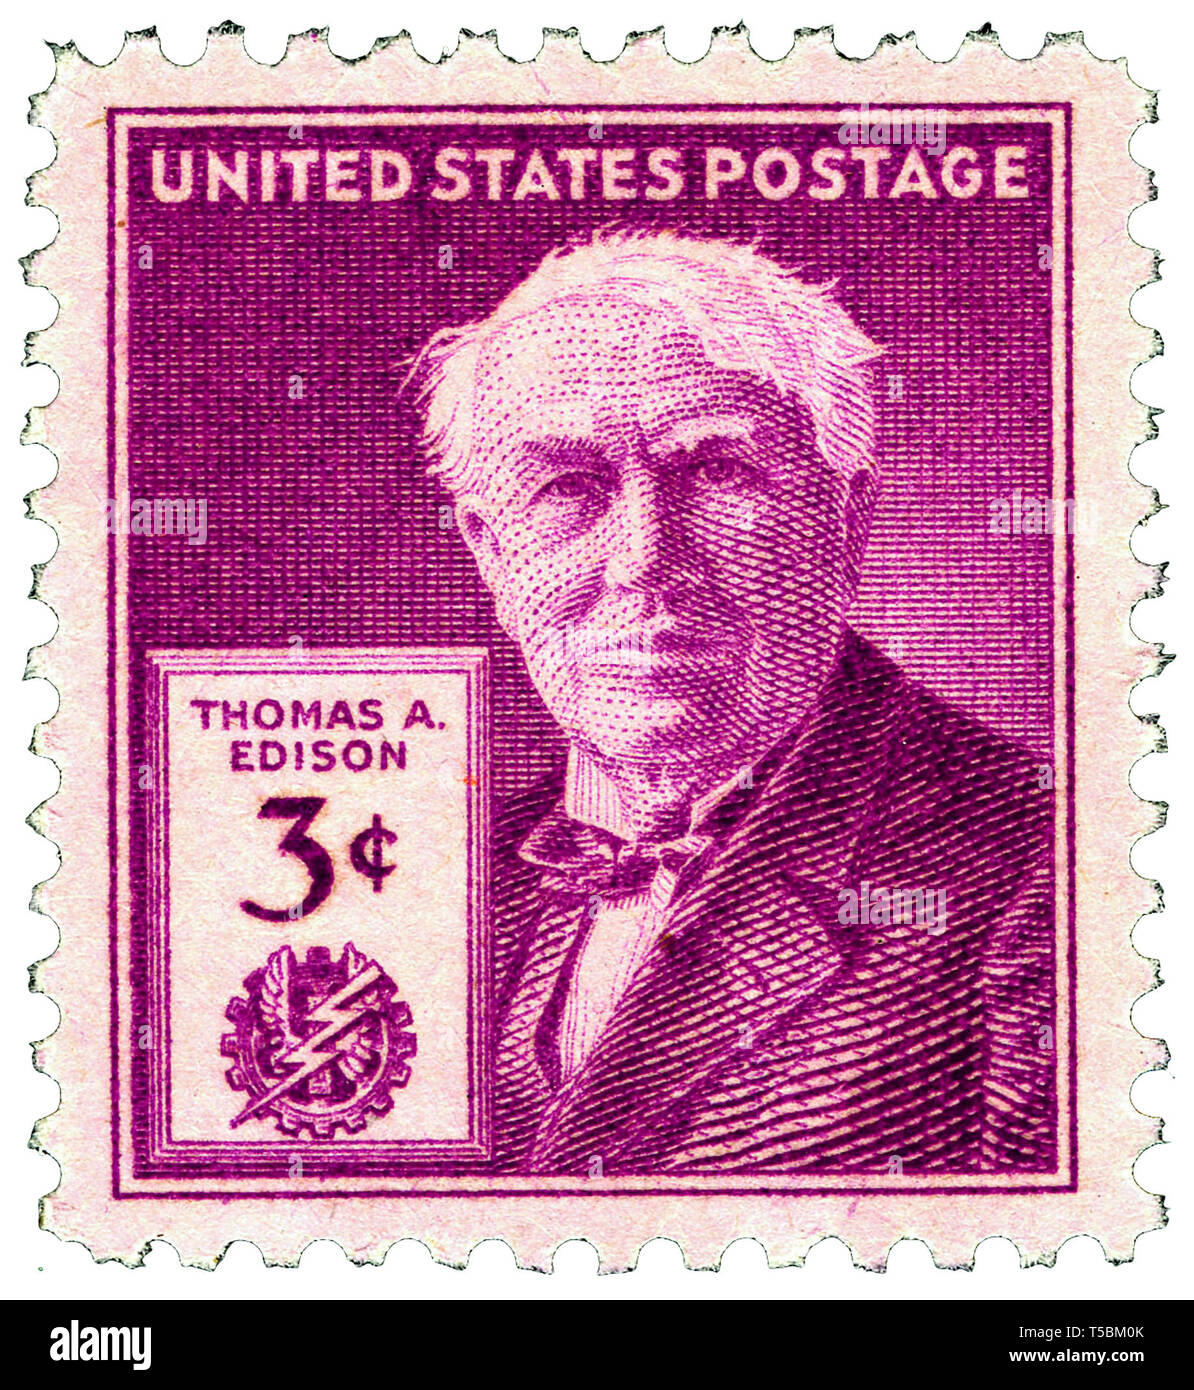 Thomas Edison (1847-1931) 3-cent 1947 rilascio Timbro DEGLI STATI UNITI, rilasciata in occasione del centenario della sua nascita, 11 febbraio 1947, US Postal Service Foto Stock